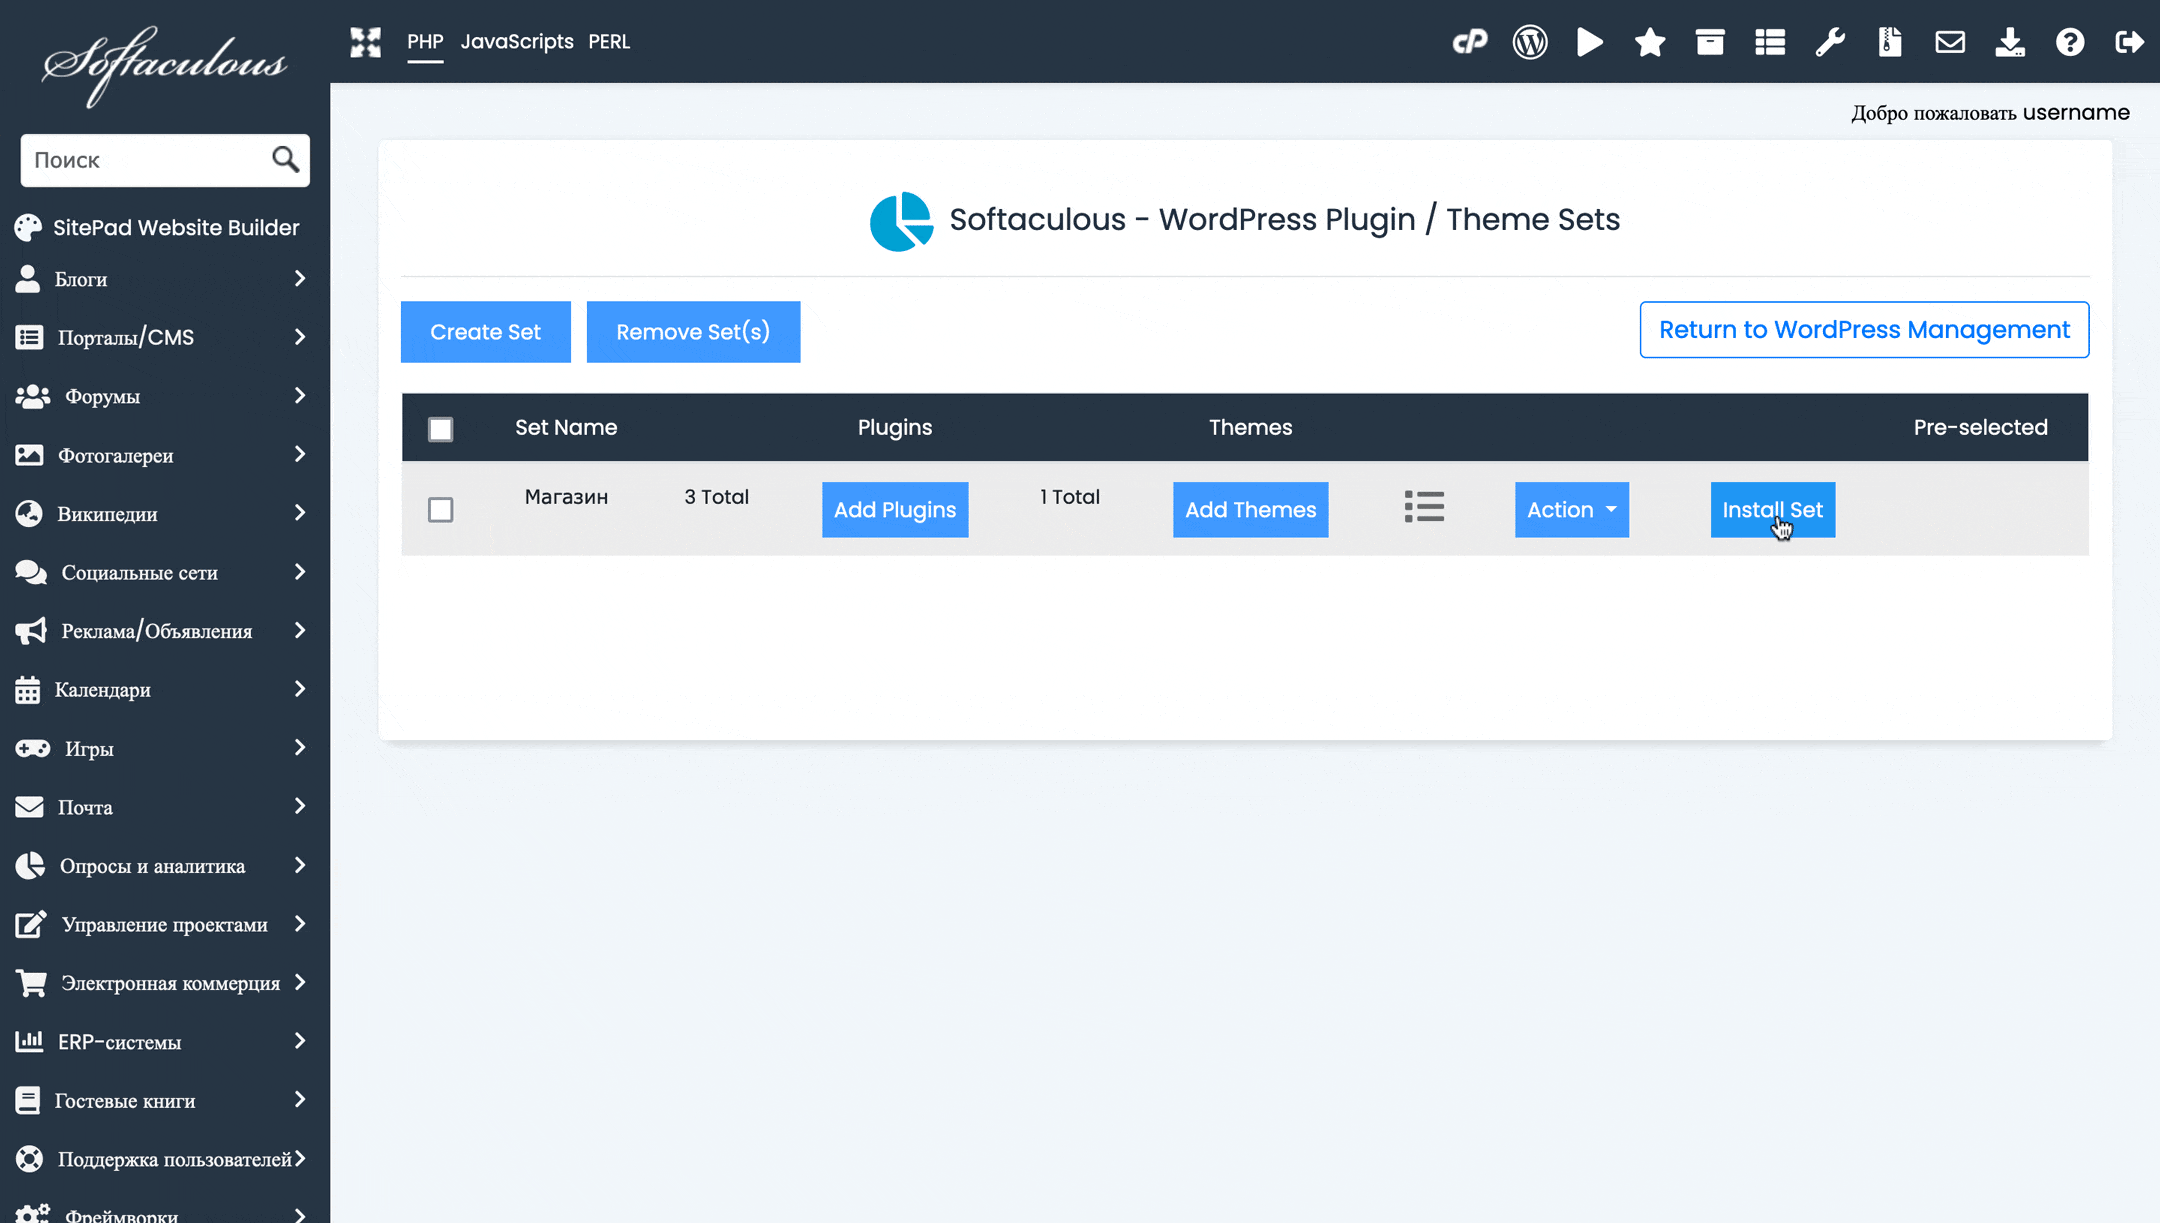 Установка набора для уже существующих WordPress-инсталляций